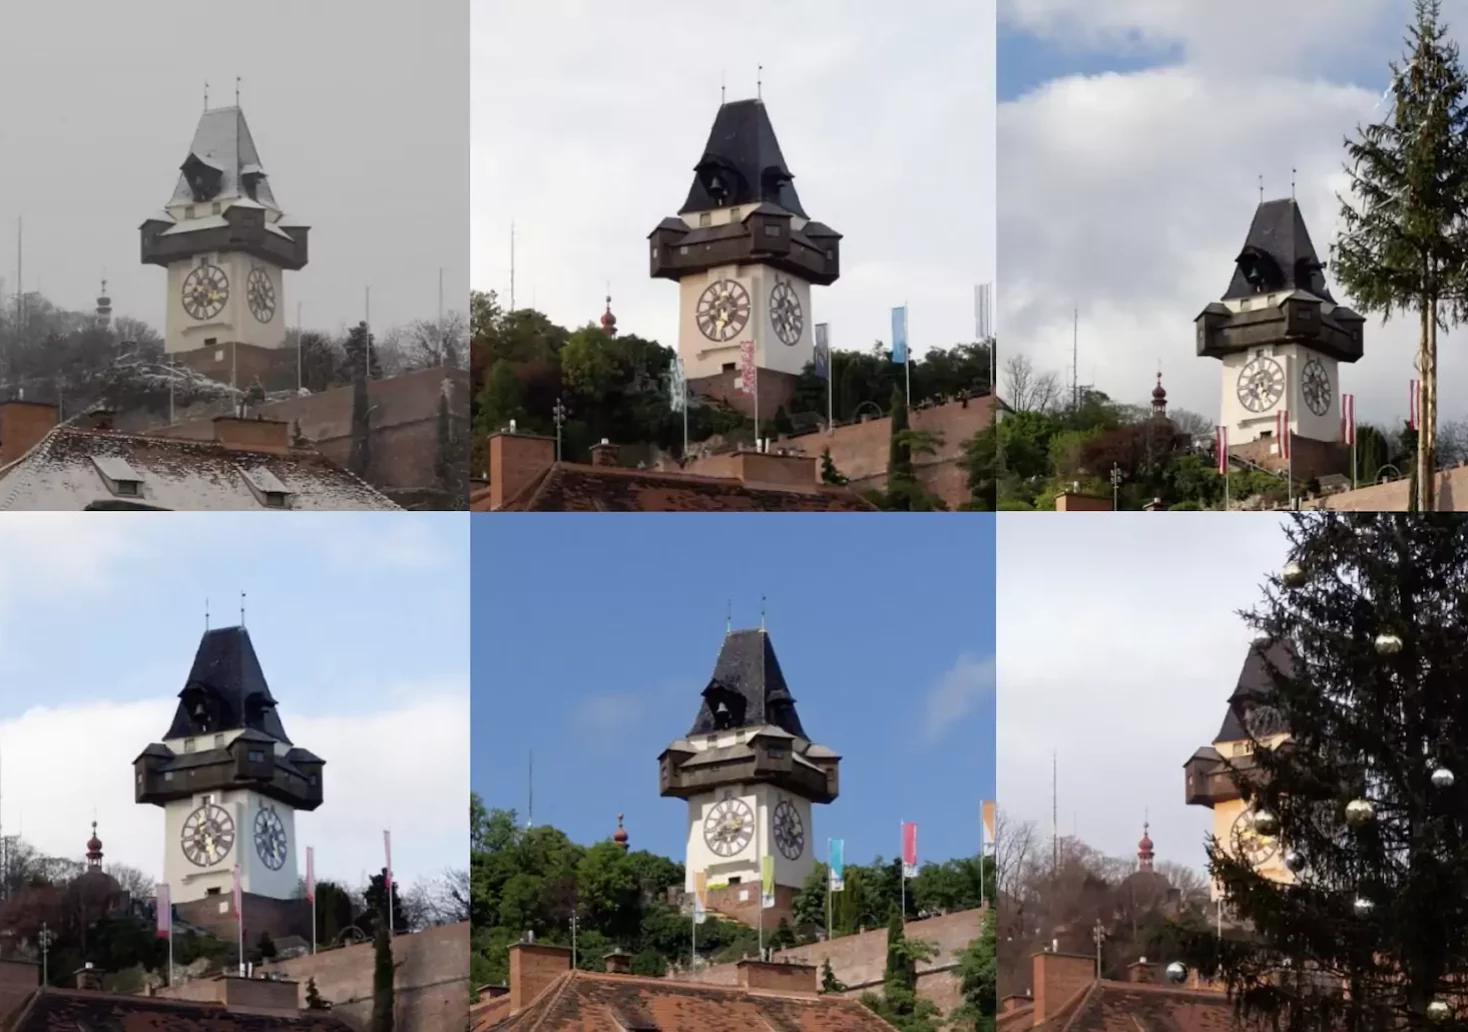 Foto auf 5min.at zeigt den Grazer Uhrturm im Wandel der Jahreszeiten.